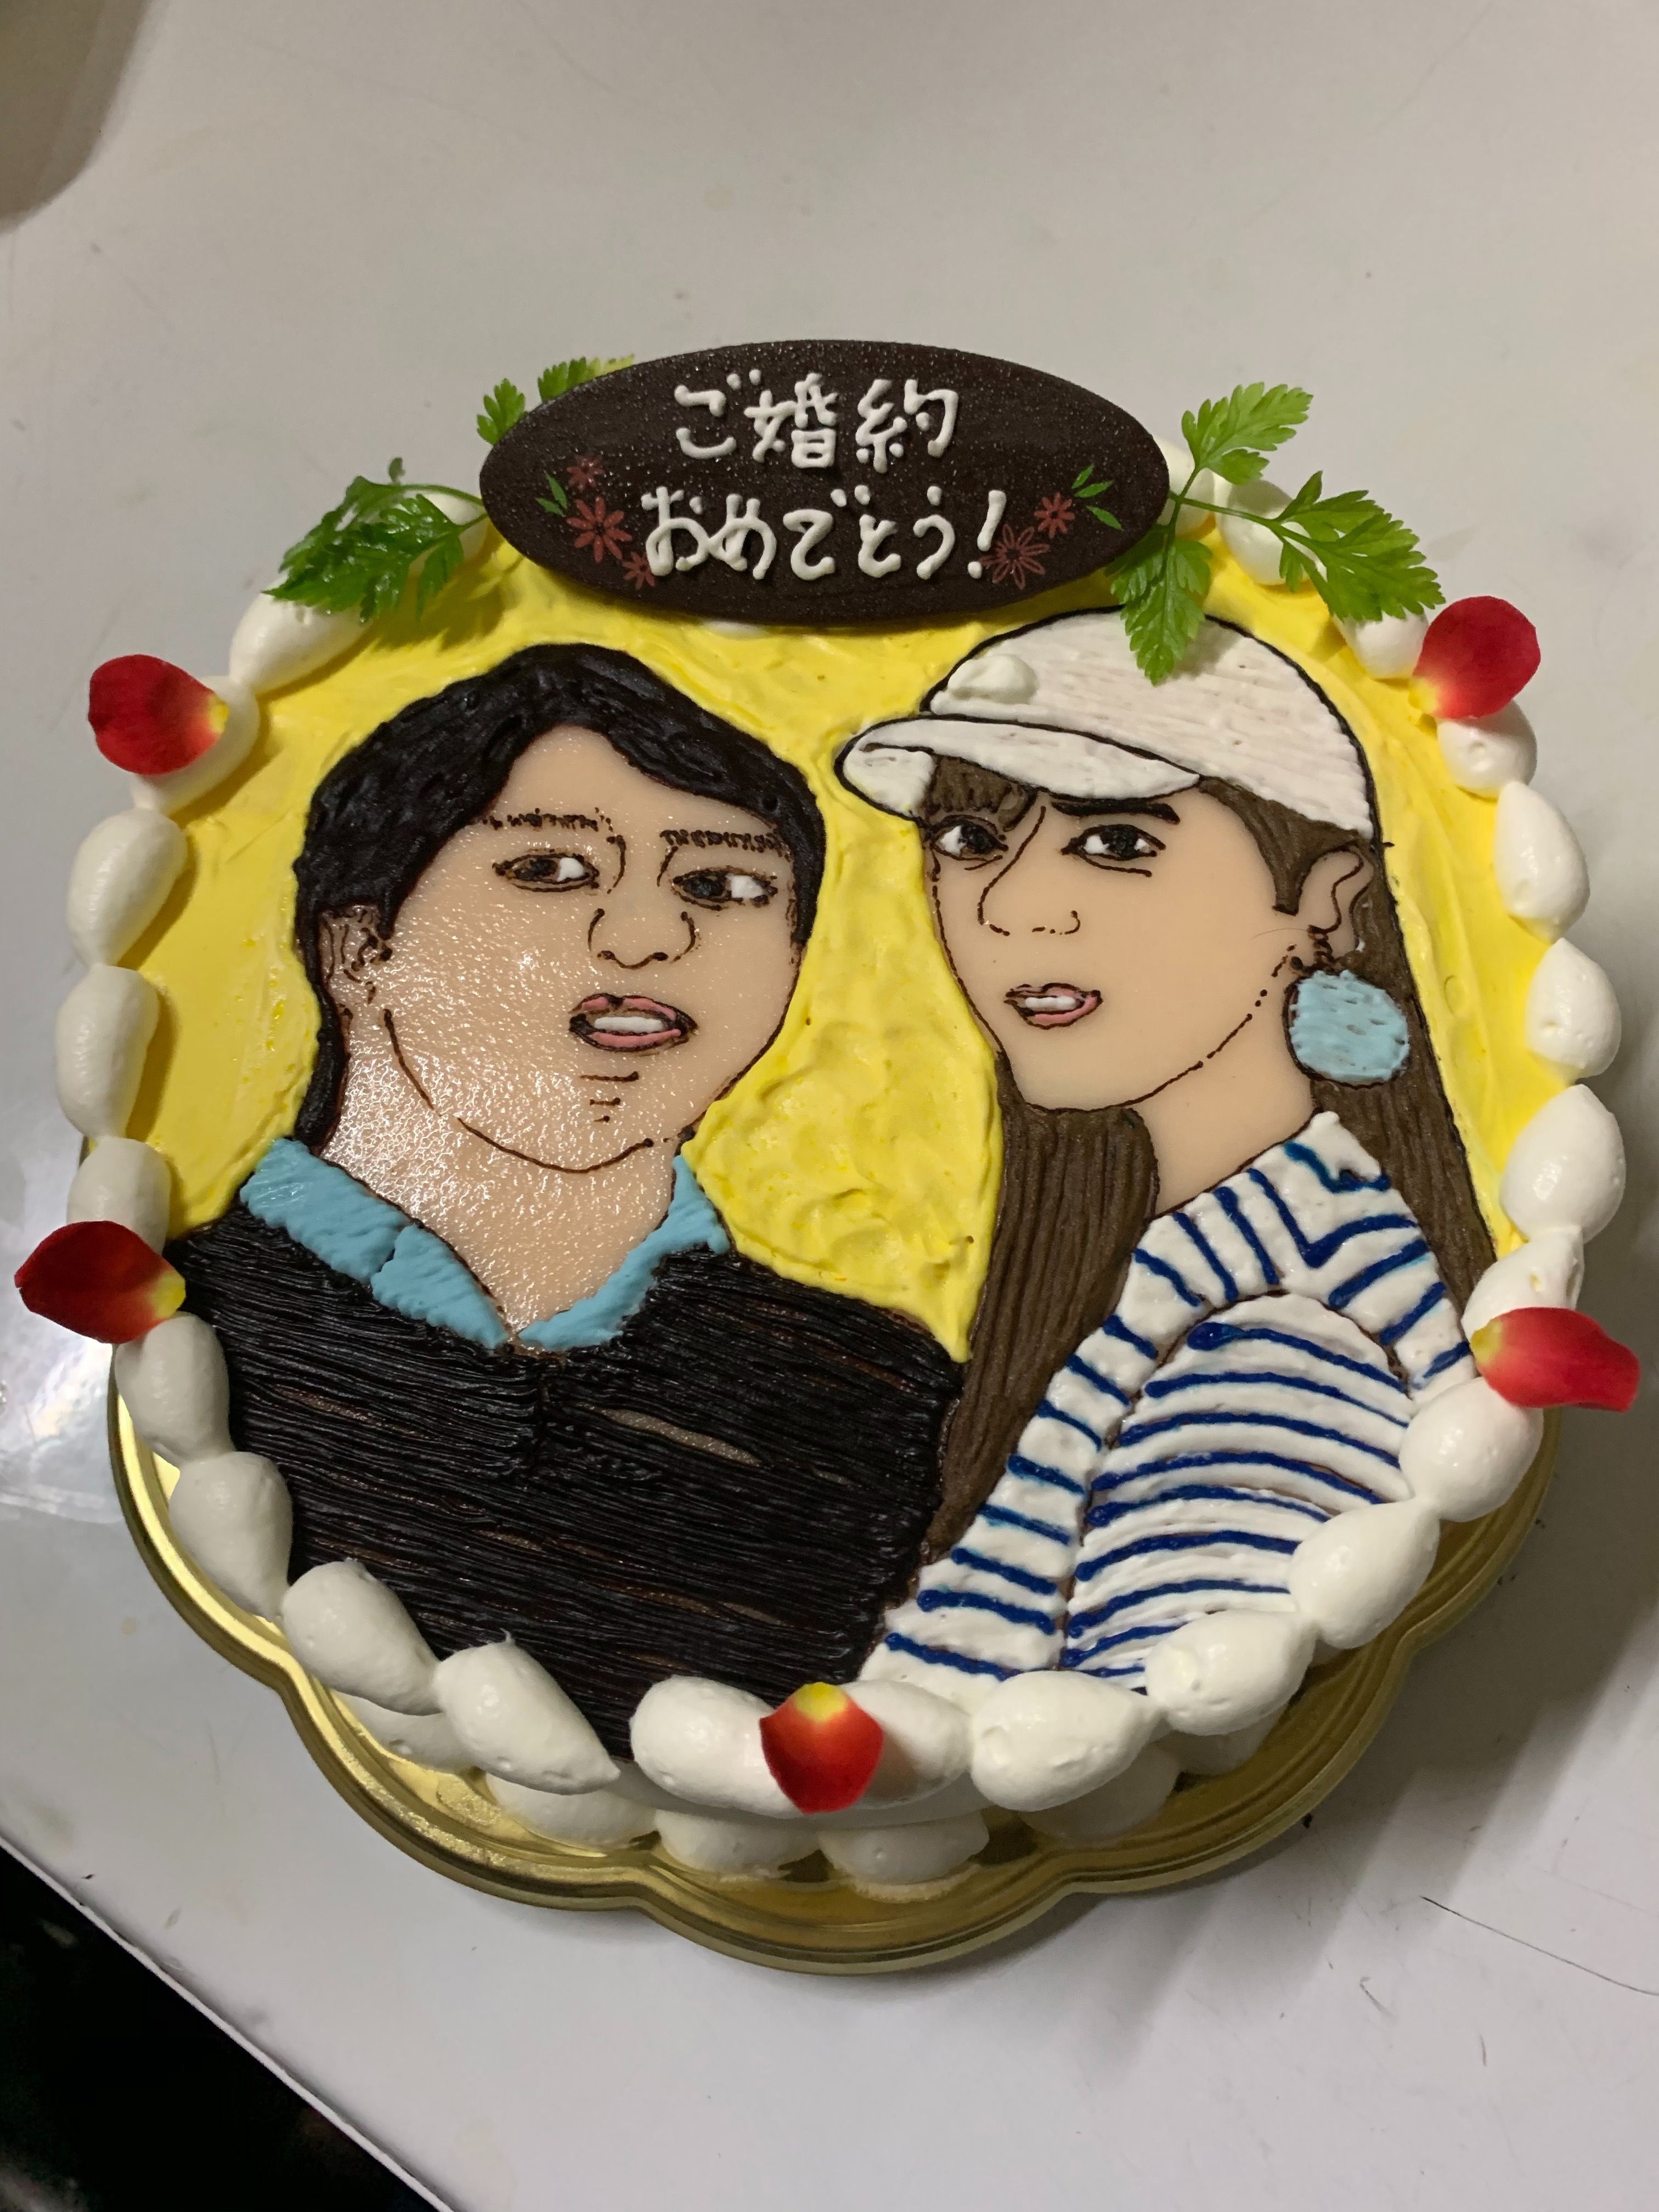 似顔絵ケーキ宅配 東京 デコレーションケーキのデリバリーショップ 楽天ブログ